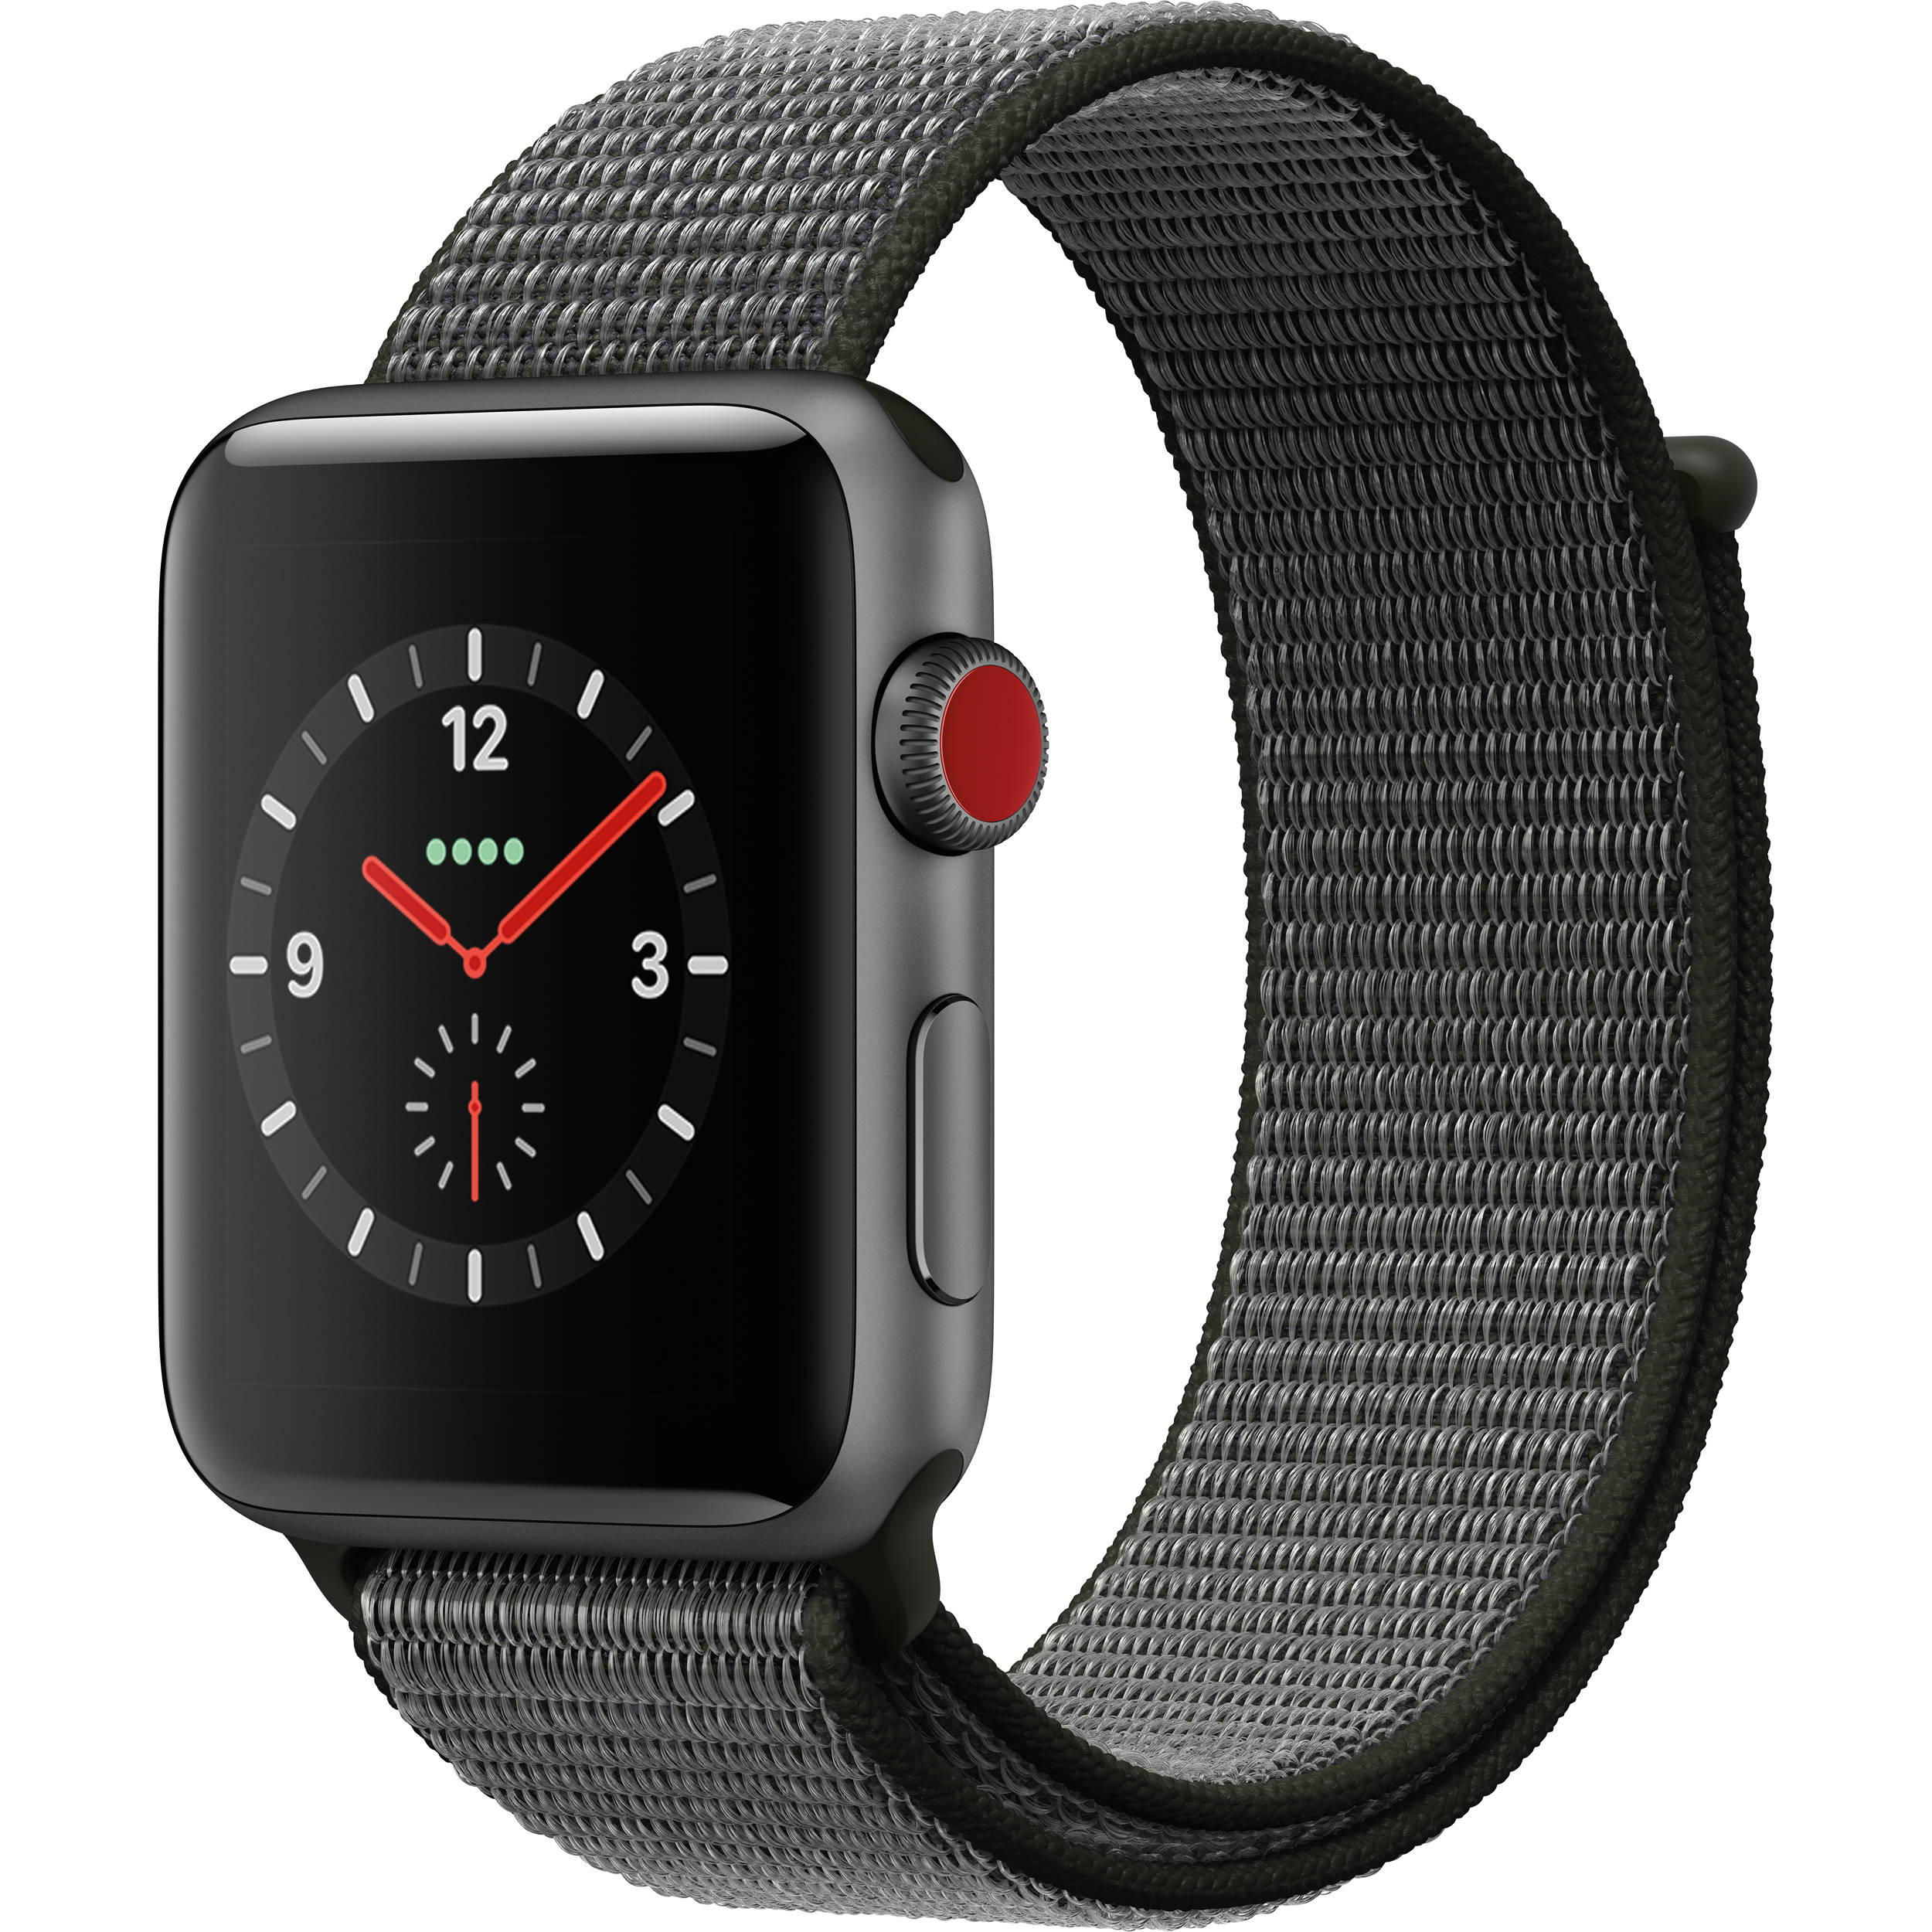 Apple начала продавать восстановленные умные часы Watch Series 3